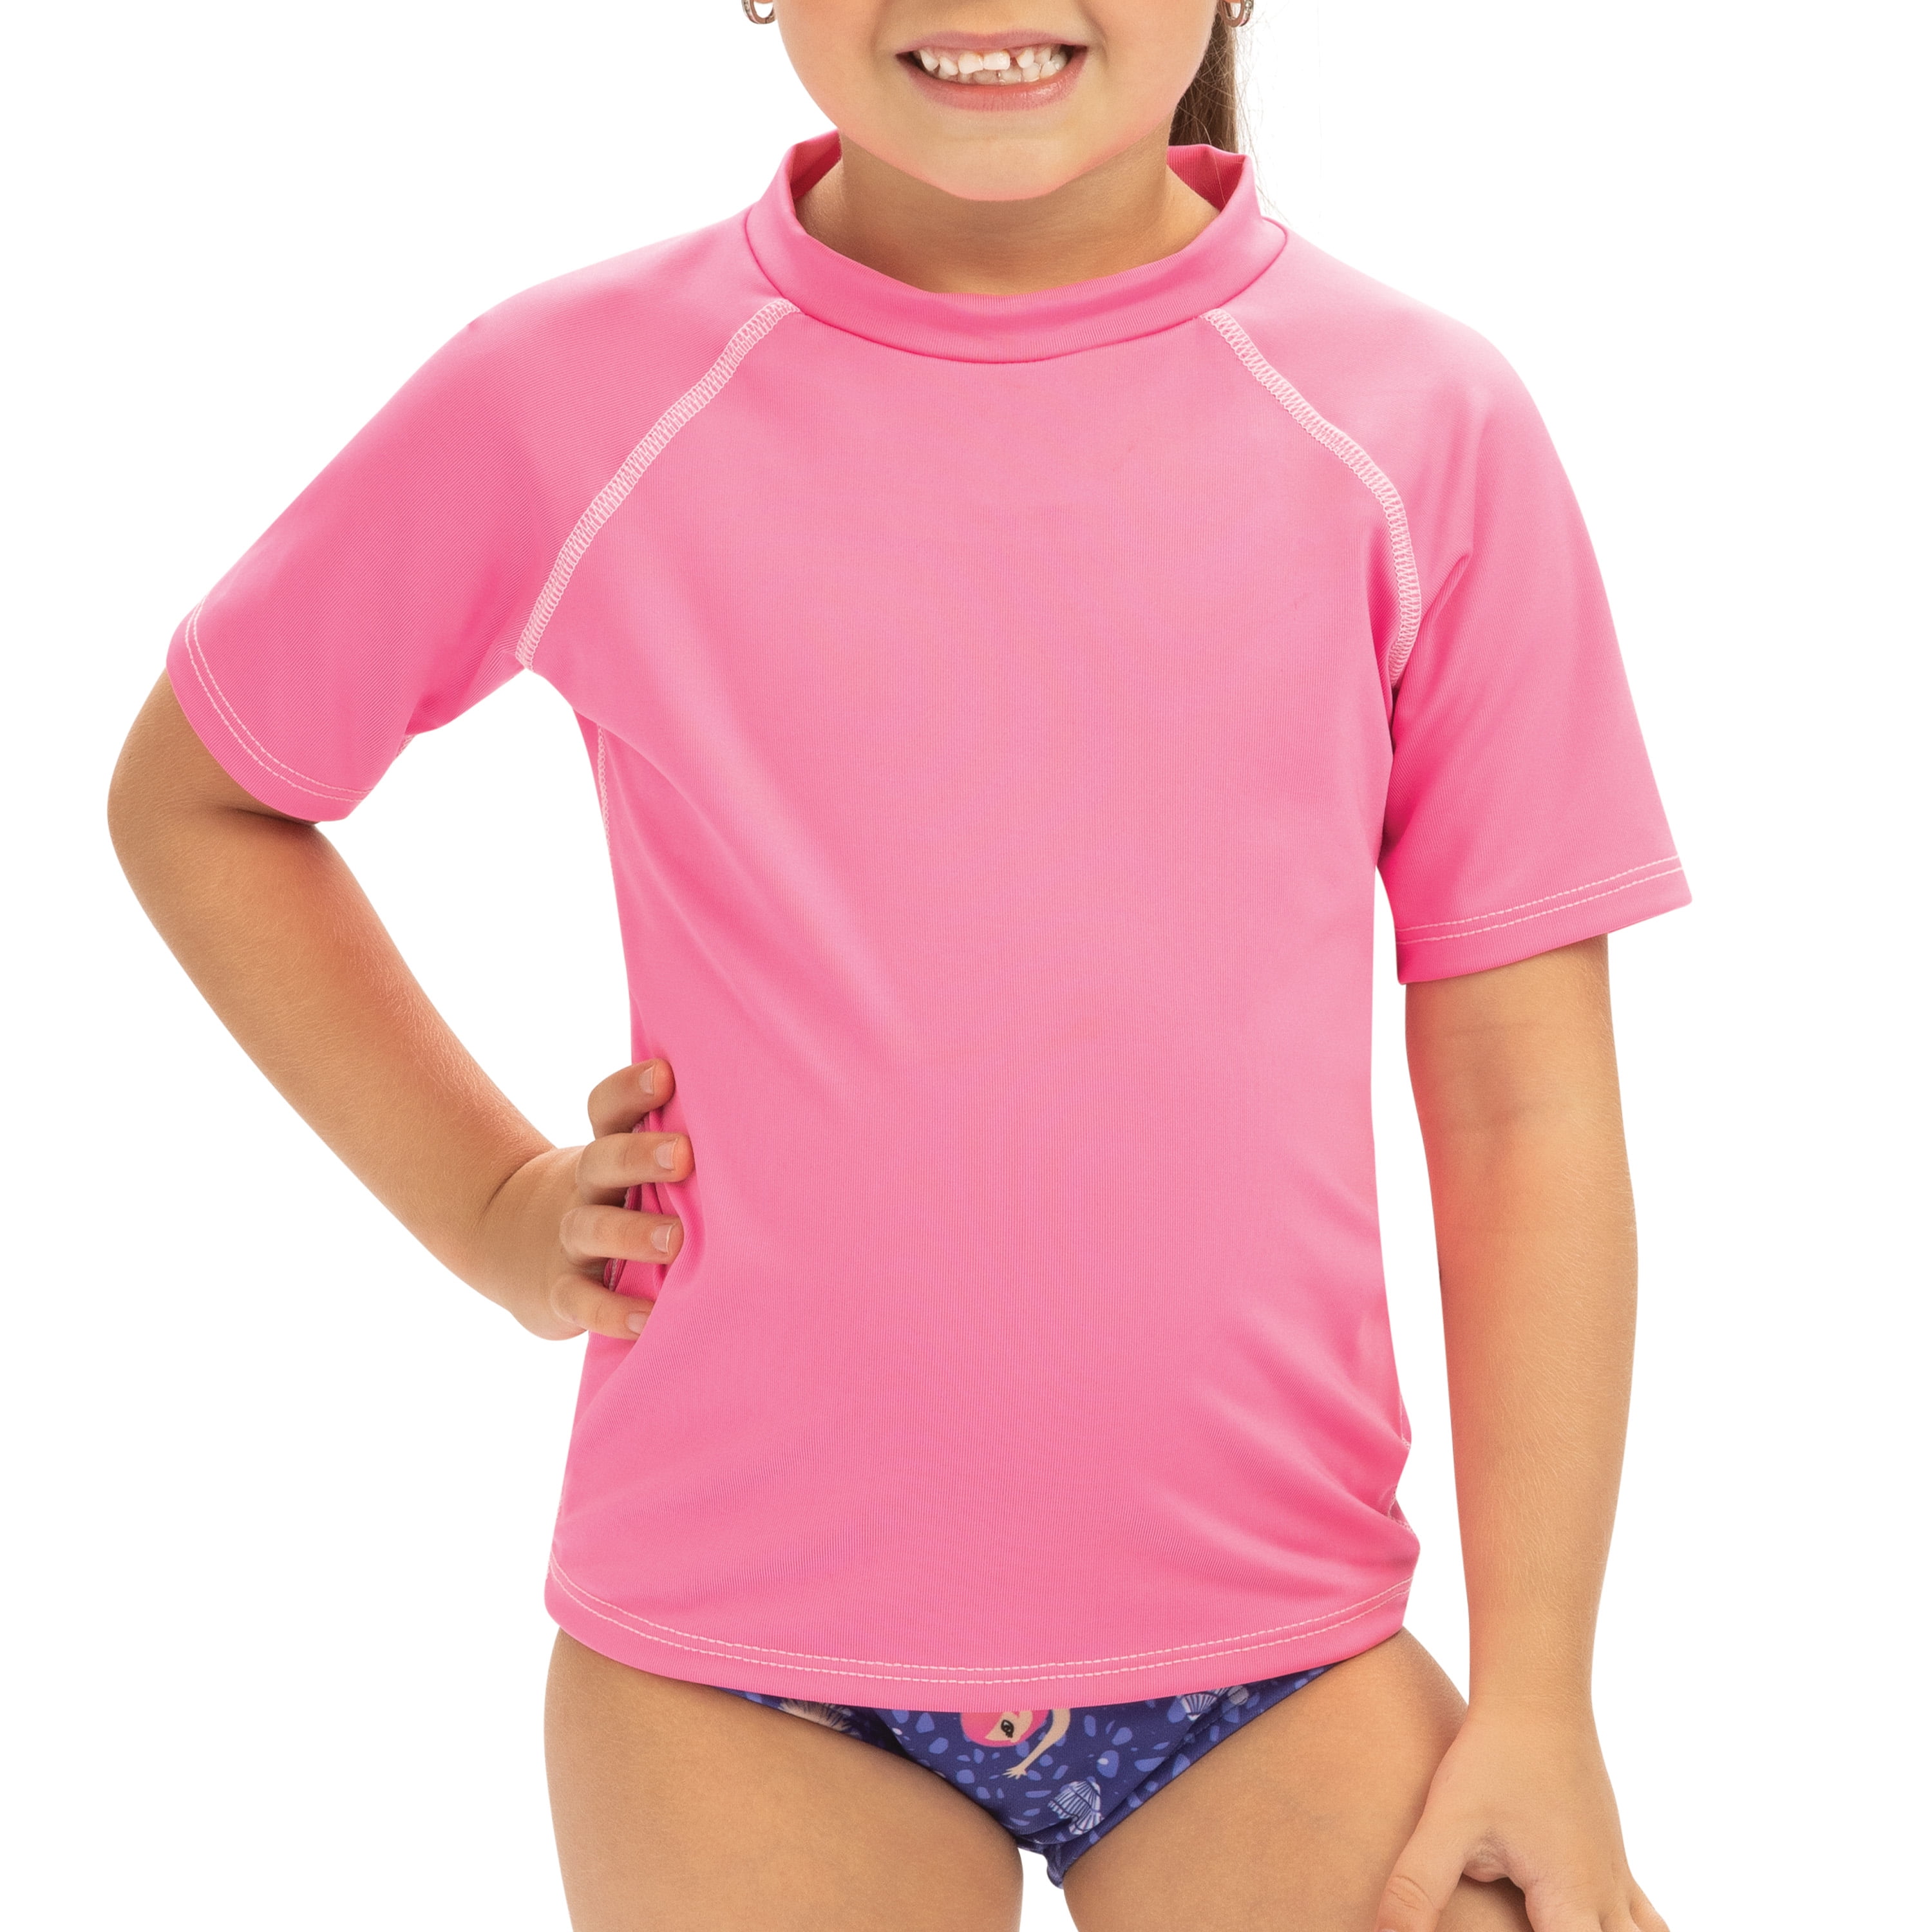 NWT Gymboree Boys Swimsuit Monkey Rash Guard Shirt Toddler UPF 50 Toddler sizes 